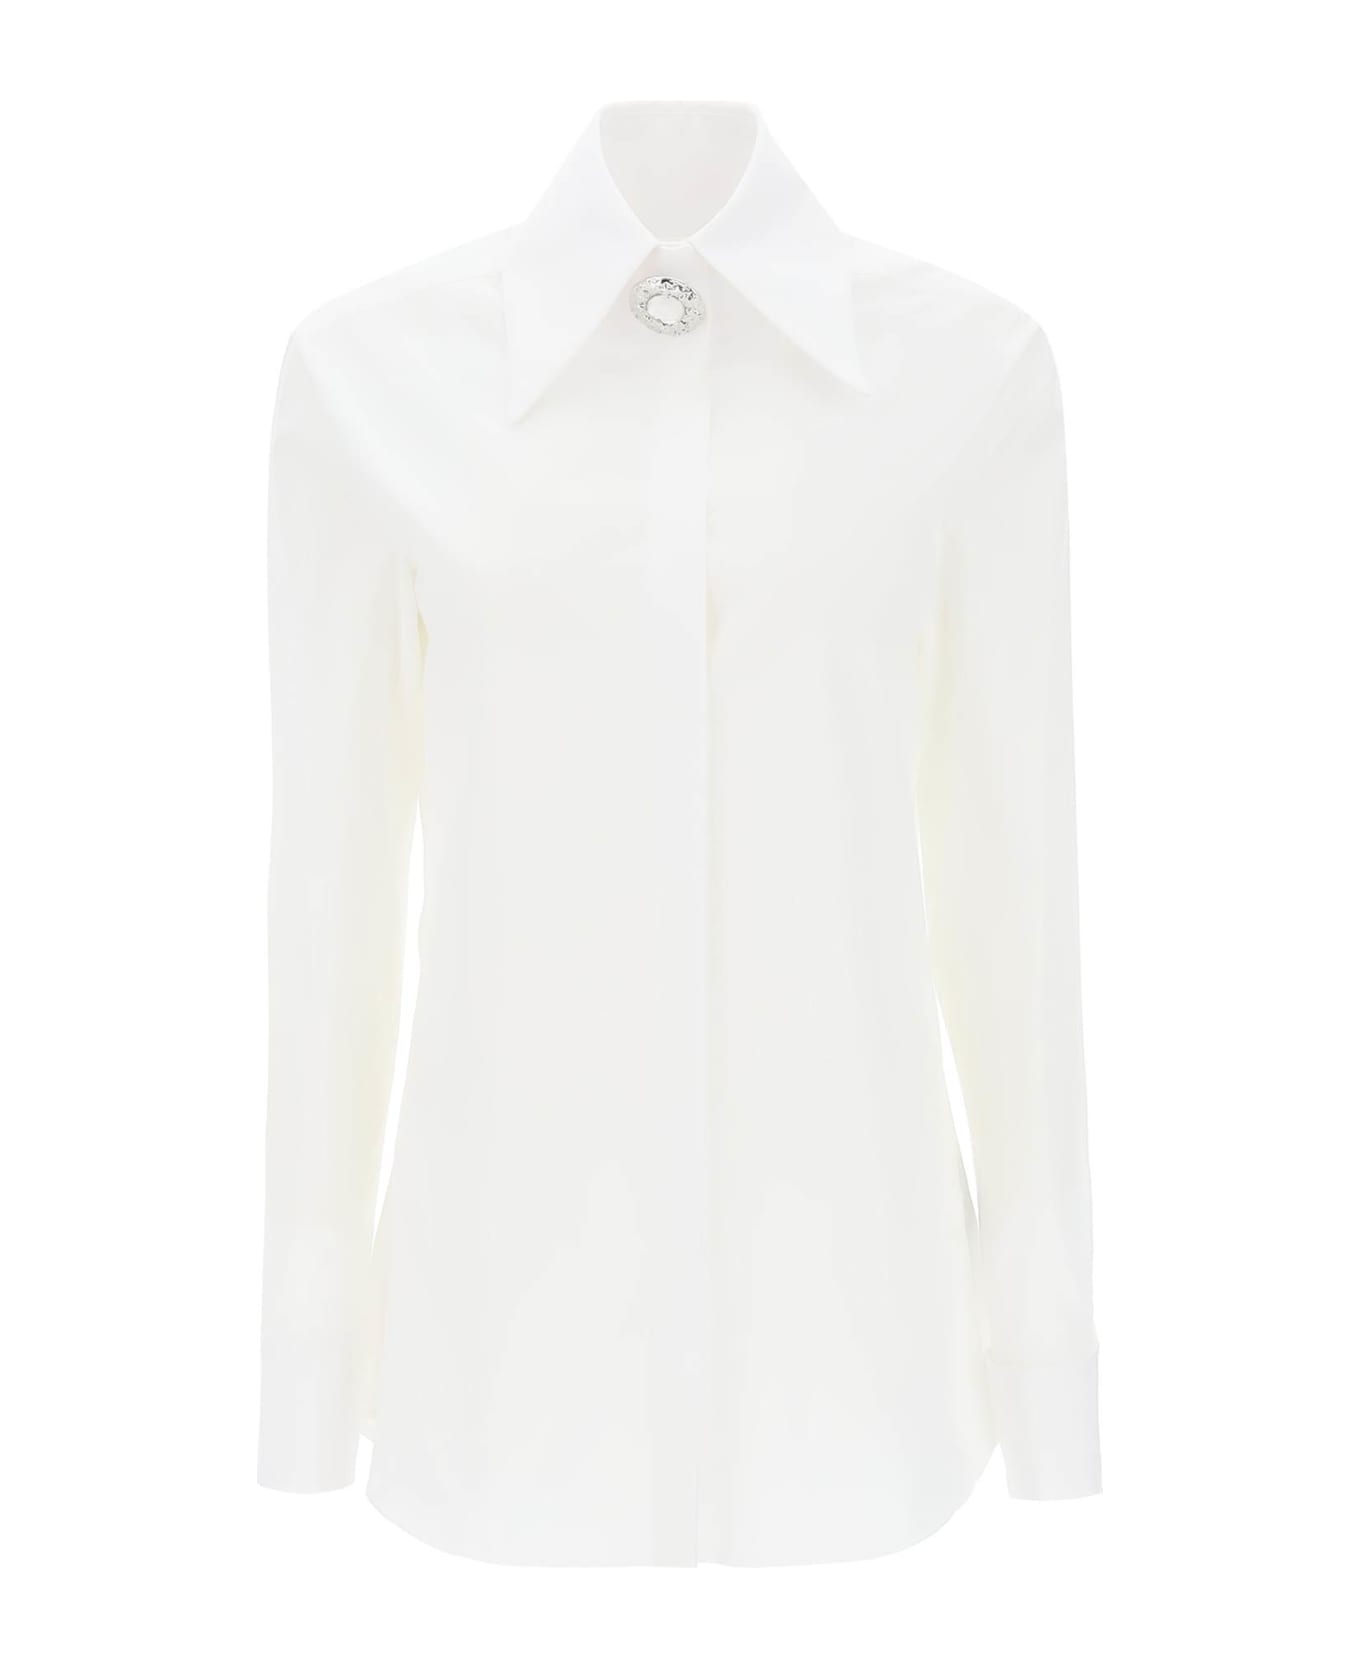 Balmain Poplin Shirt With Jewel Button - White